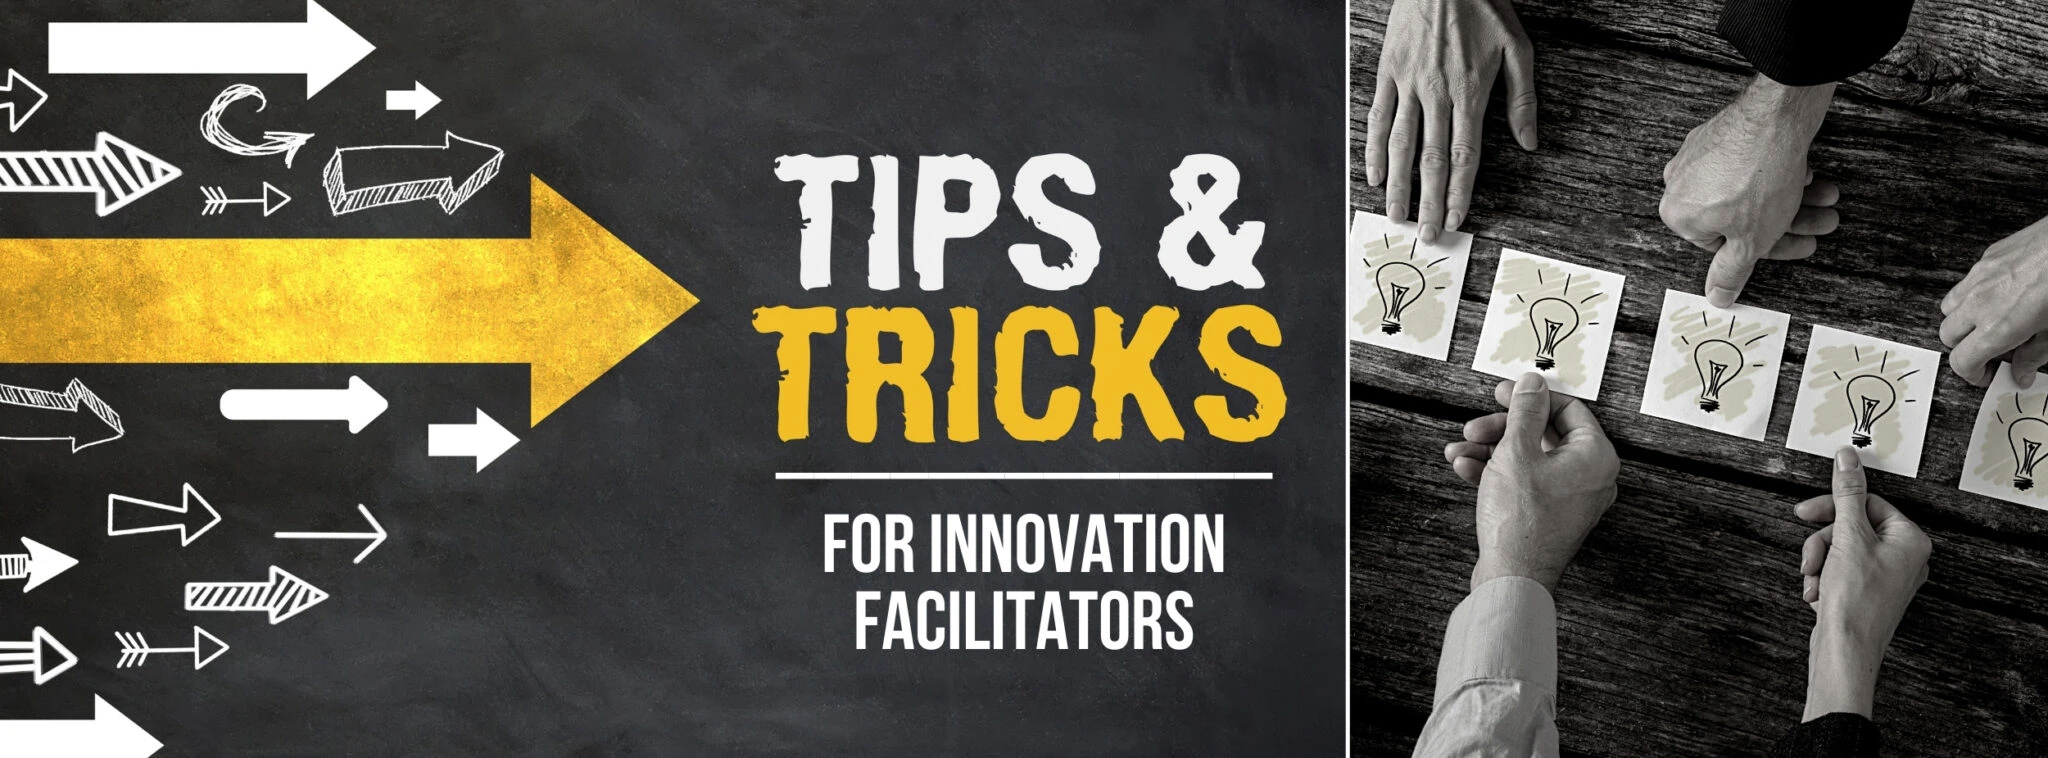 12 Tips & Tricks for Innovation Facilitators